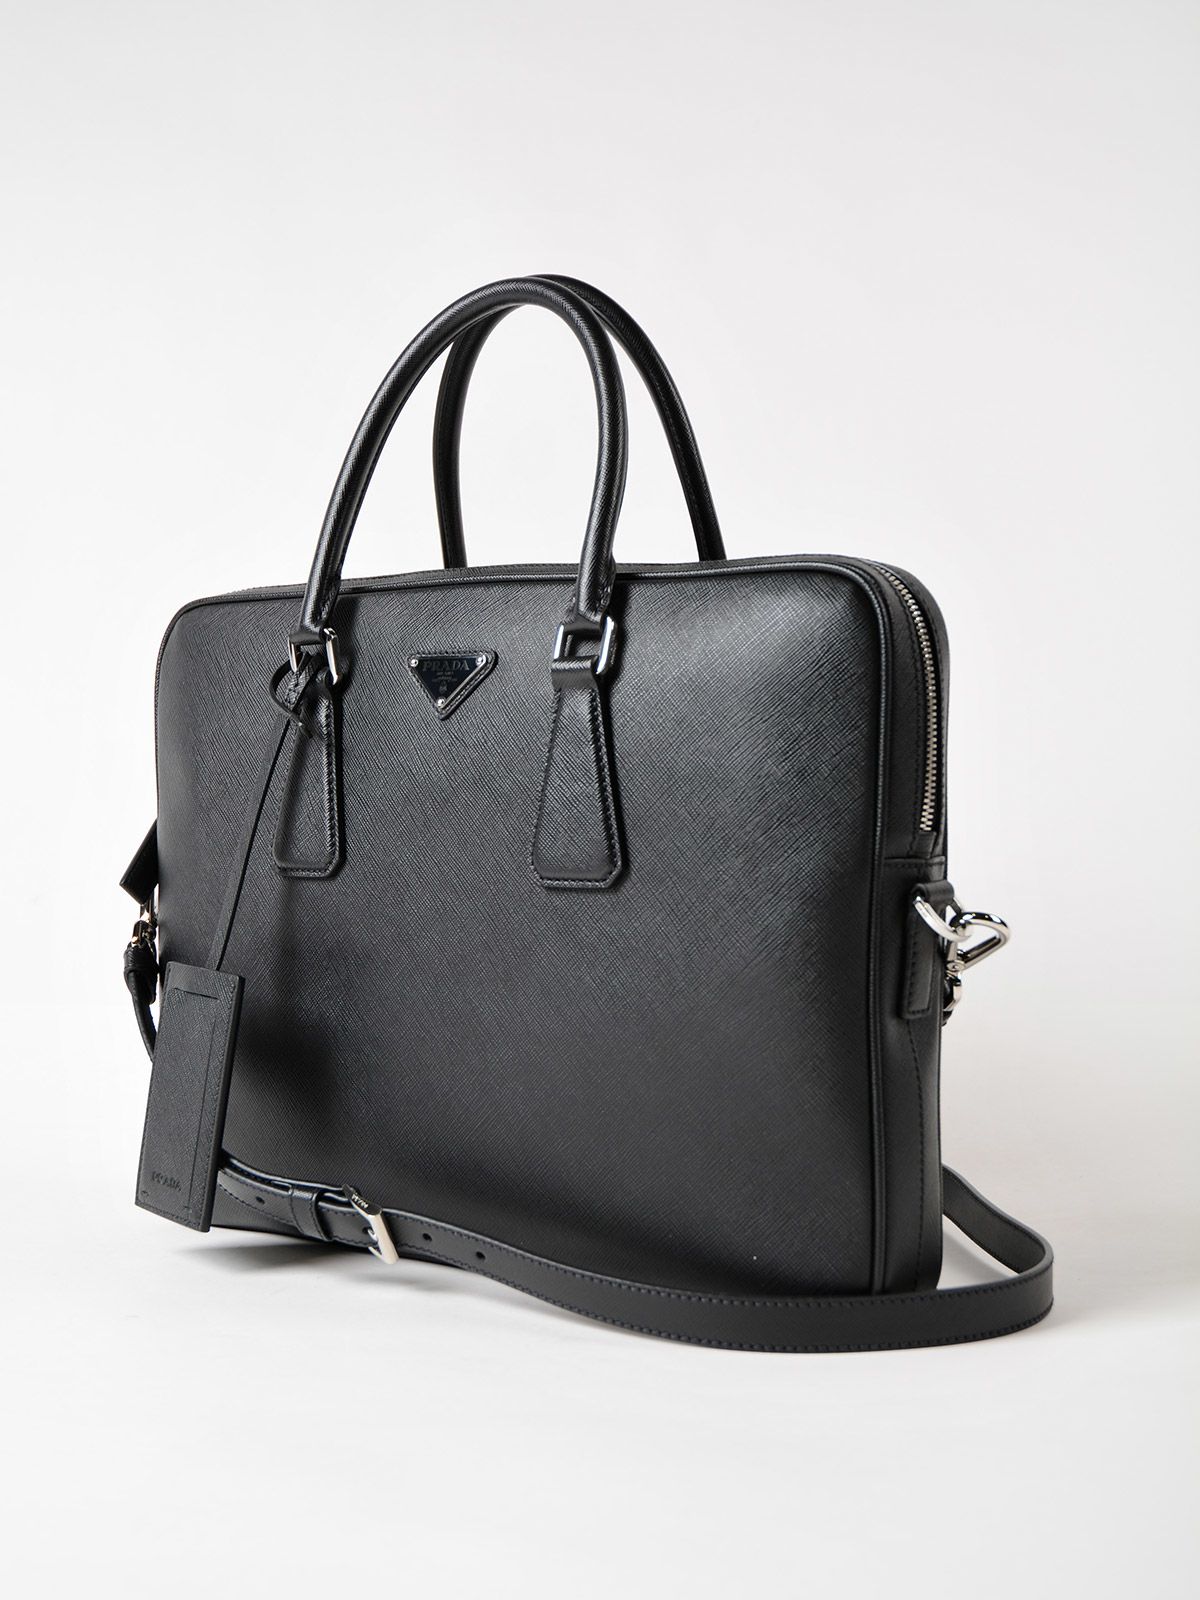 Prada - Prada Classic Briefcase - Nero, Men's Luggage | Italist